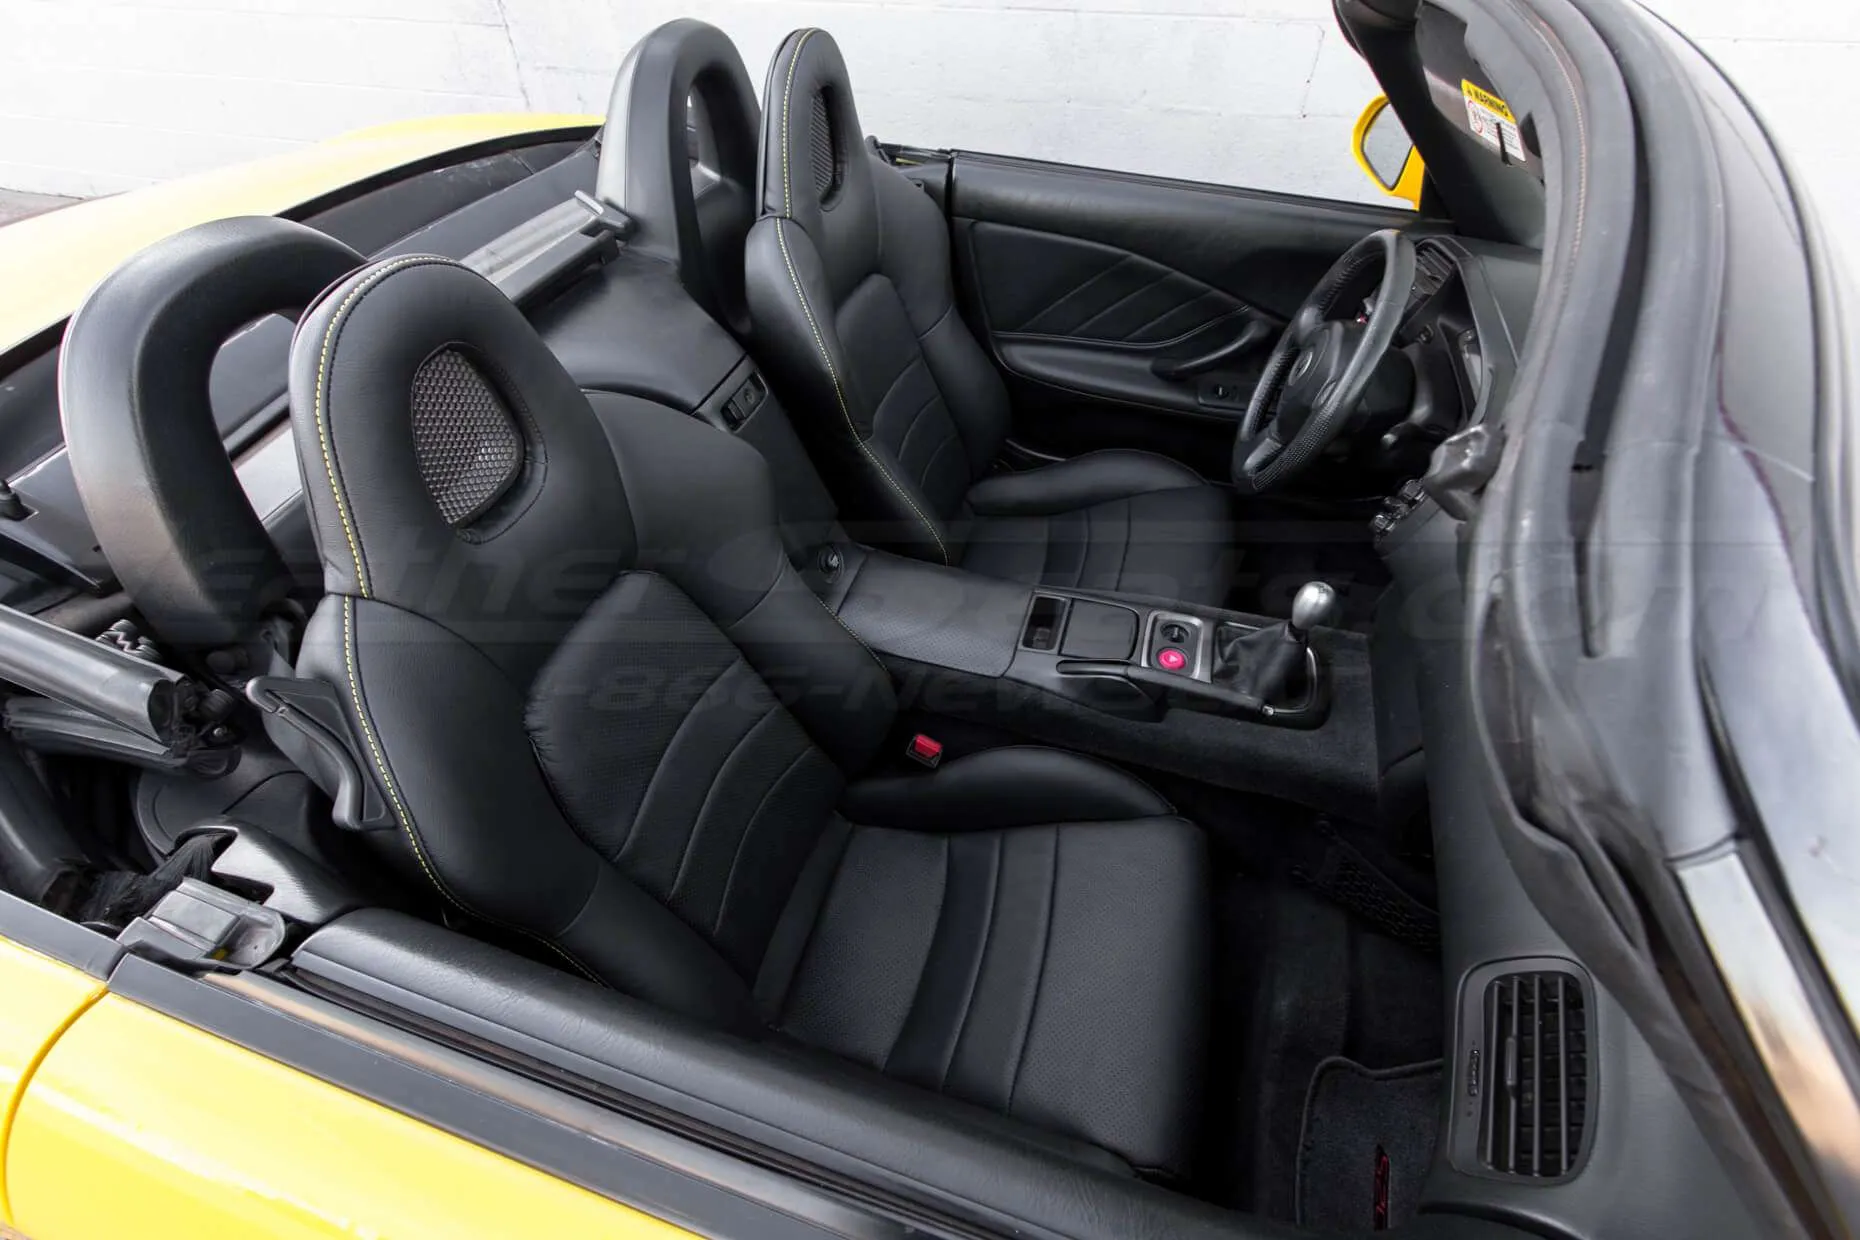 Honda S2000 Leather Upholster - Black - Full interior from passenger side